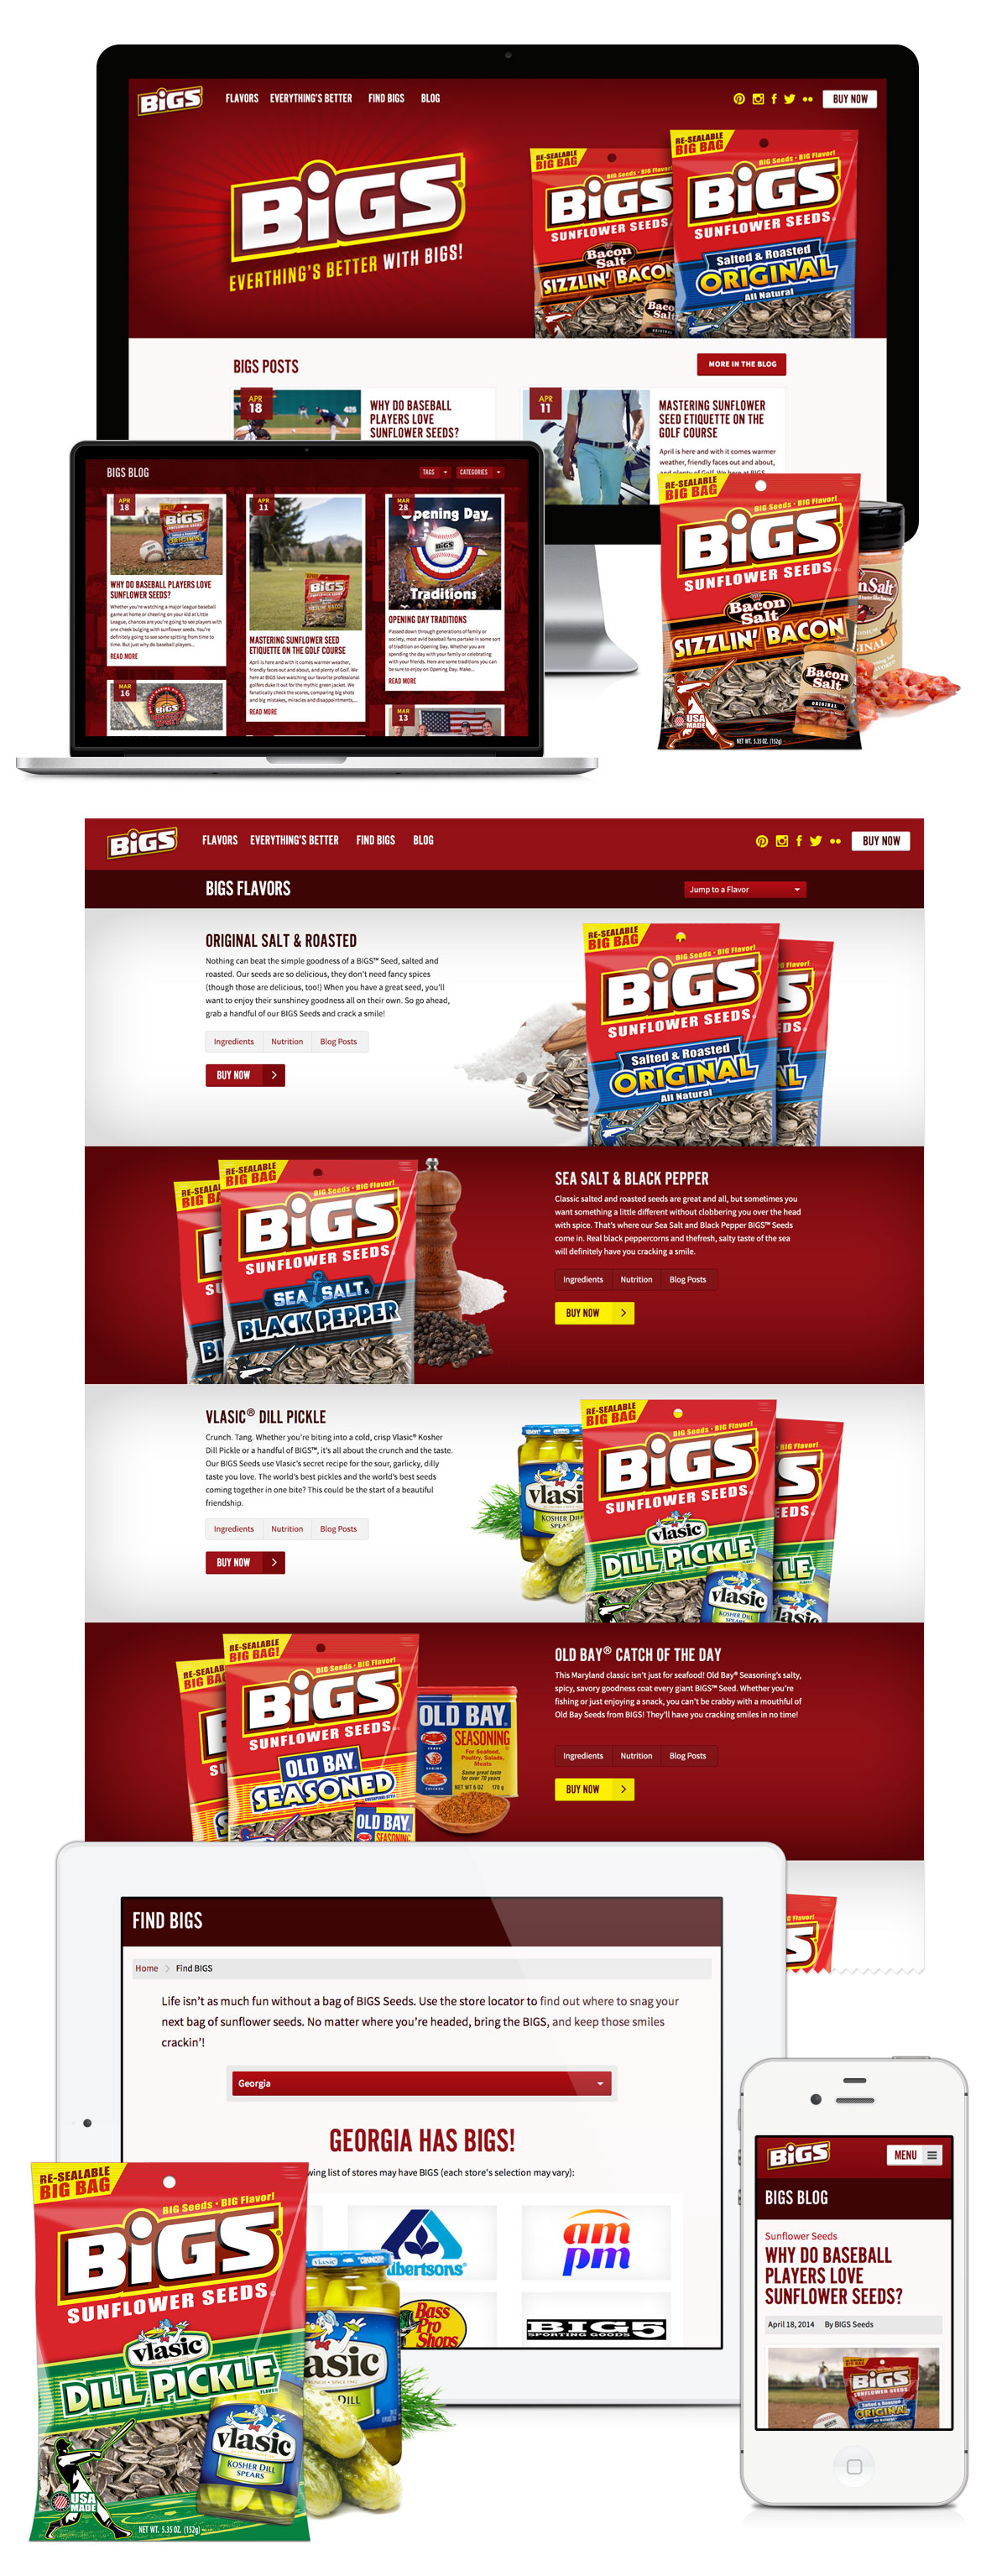 BIGS Sunflower Seeds Website Design & Development